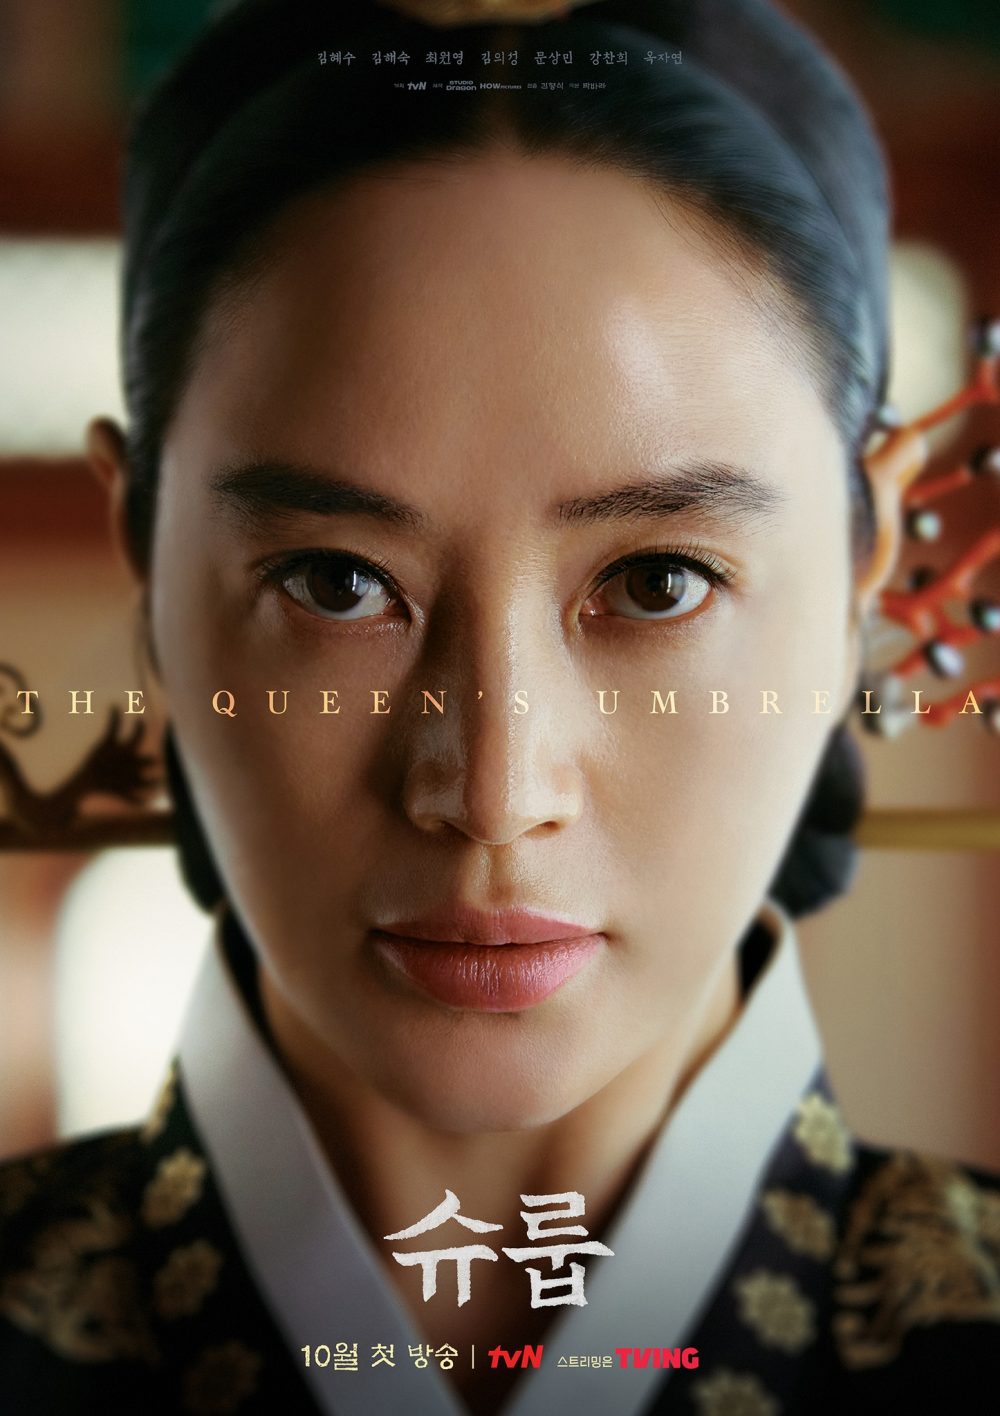 harper bazaar review phim duoi bong trung dien under the queens umbrella 2 e1666099022342 - Dưới bóng trung điện và màn lột xác của “chị đại” Kim Hye Soo